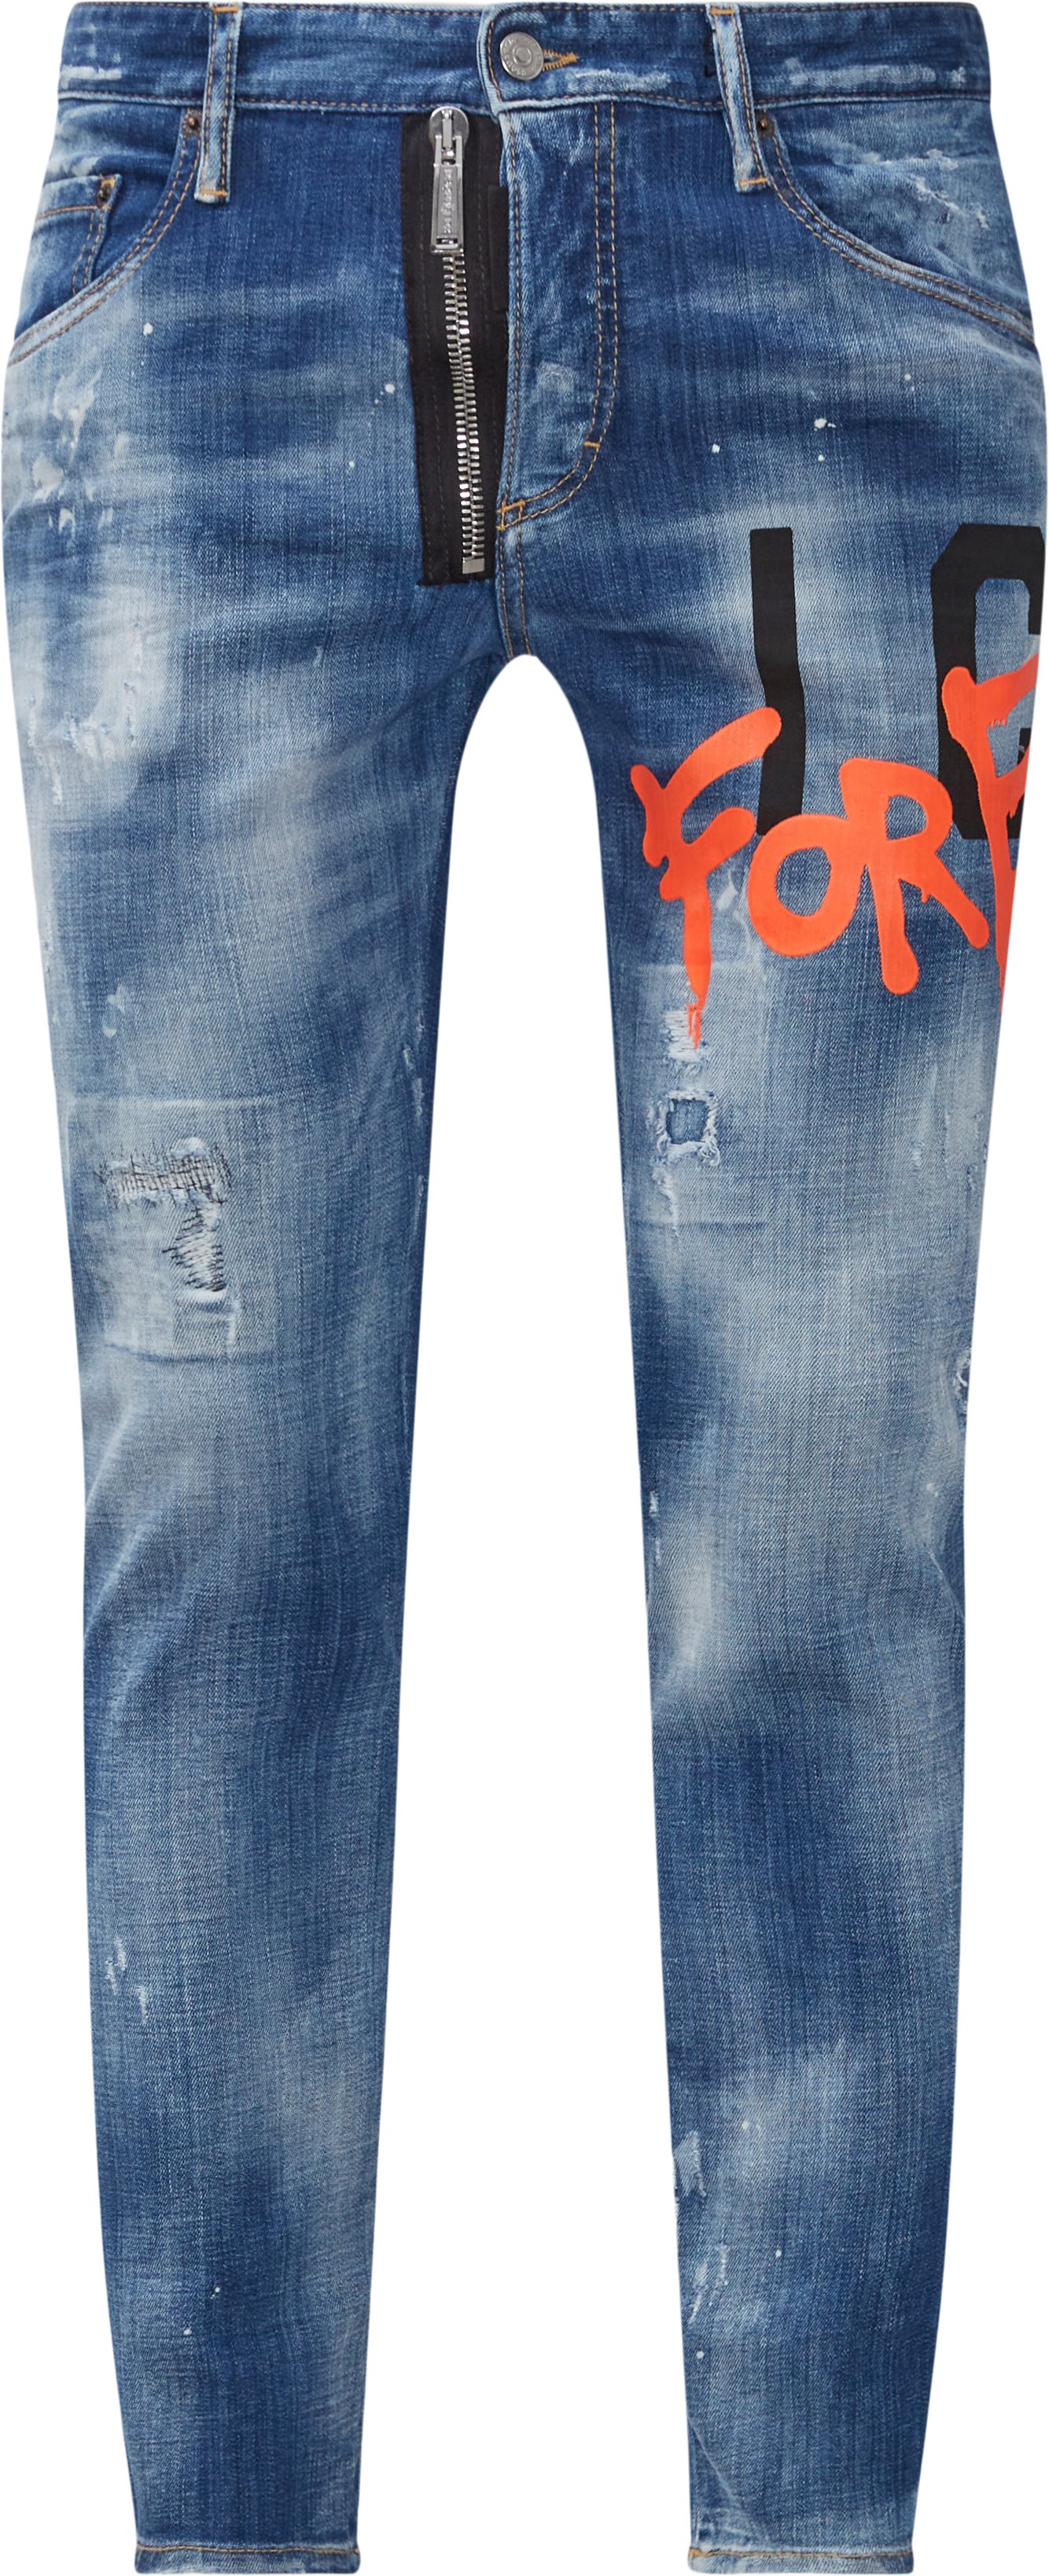 Detailed Broken Jeans - Jeans - Slim fit - Denim